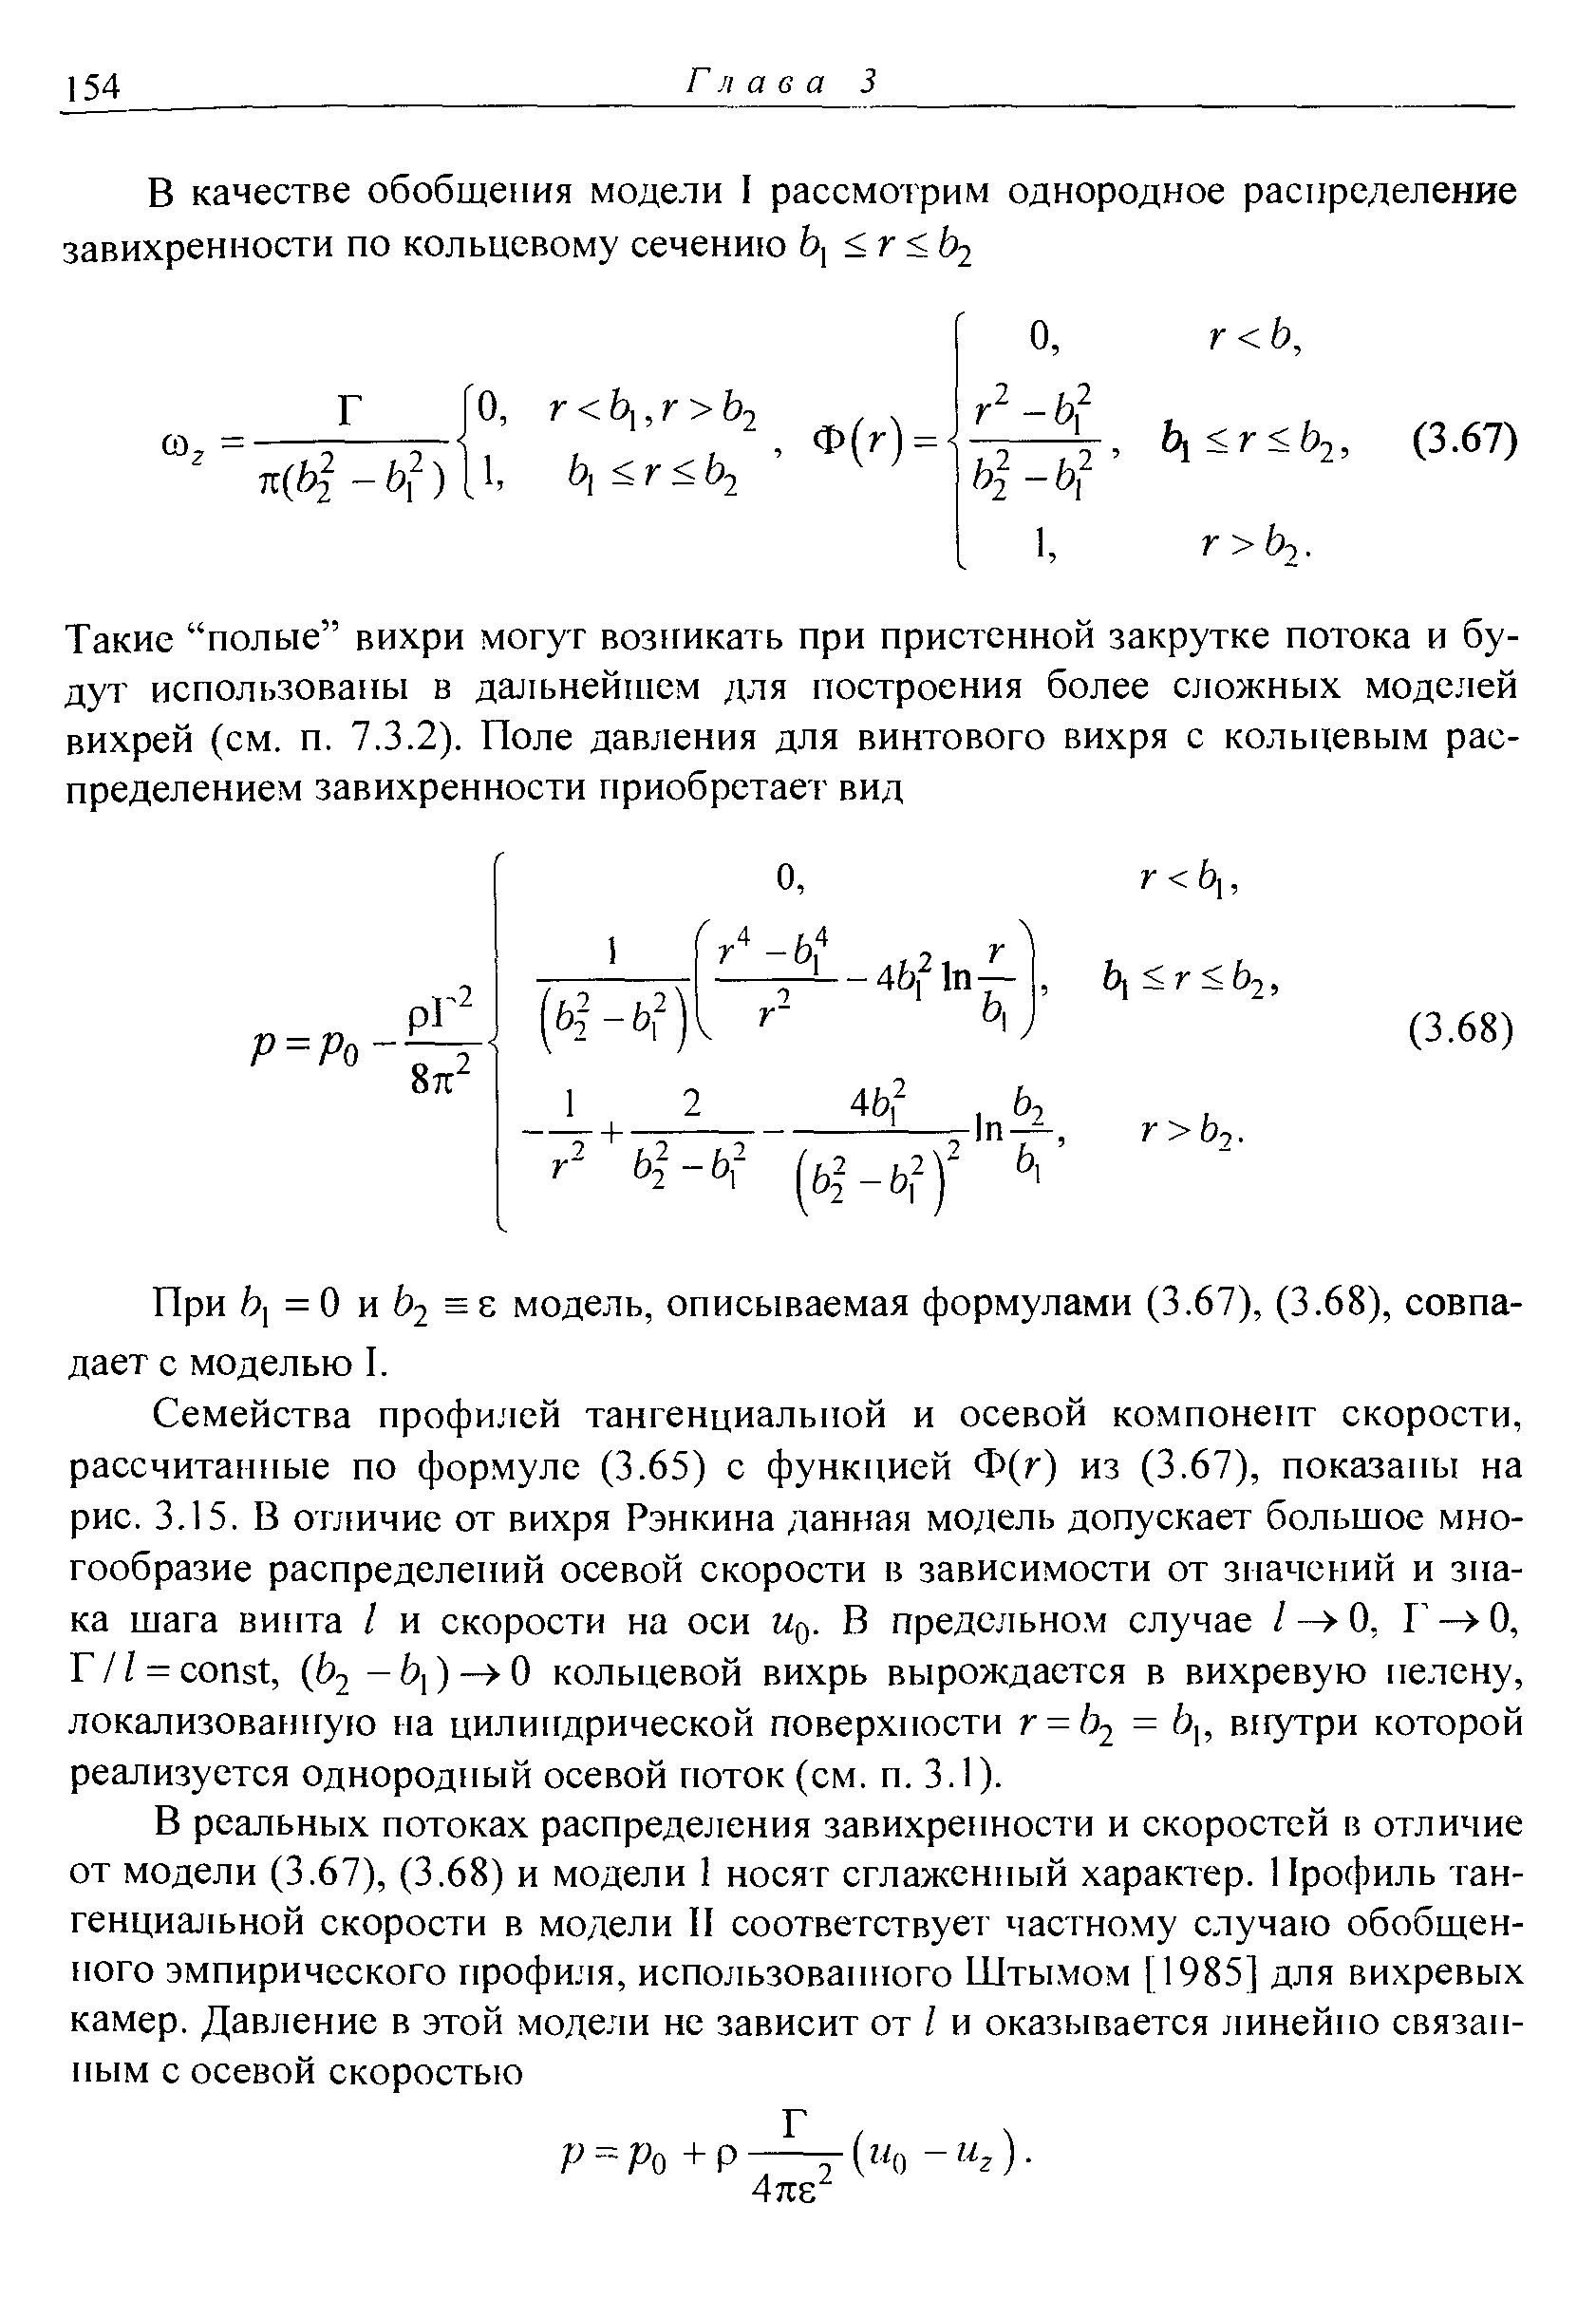 При = 0 и 2 модель, описываемая формулами (3.67), (3.68), совпадает с моделью I.
